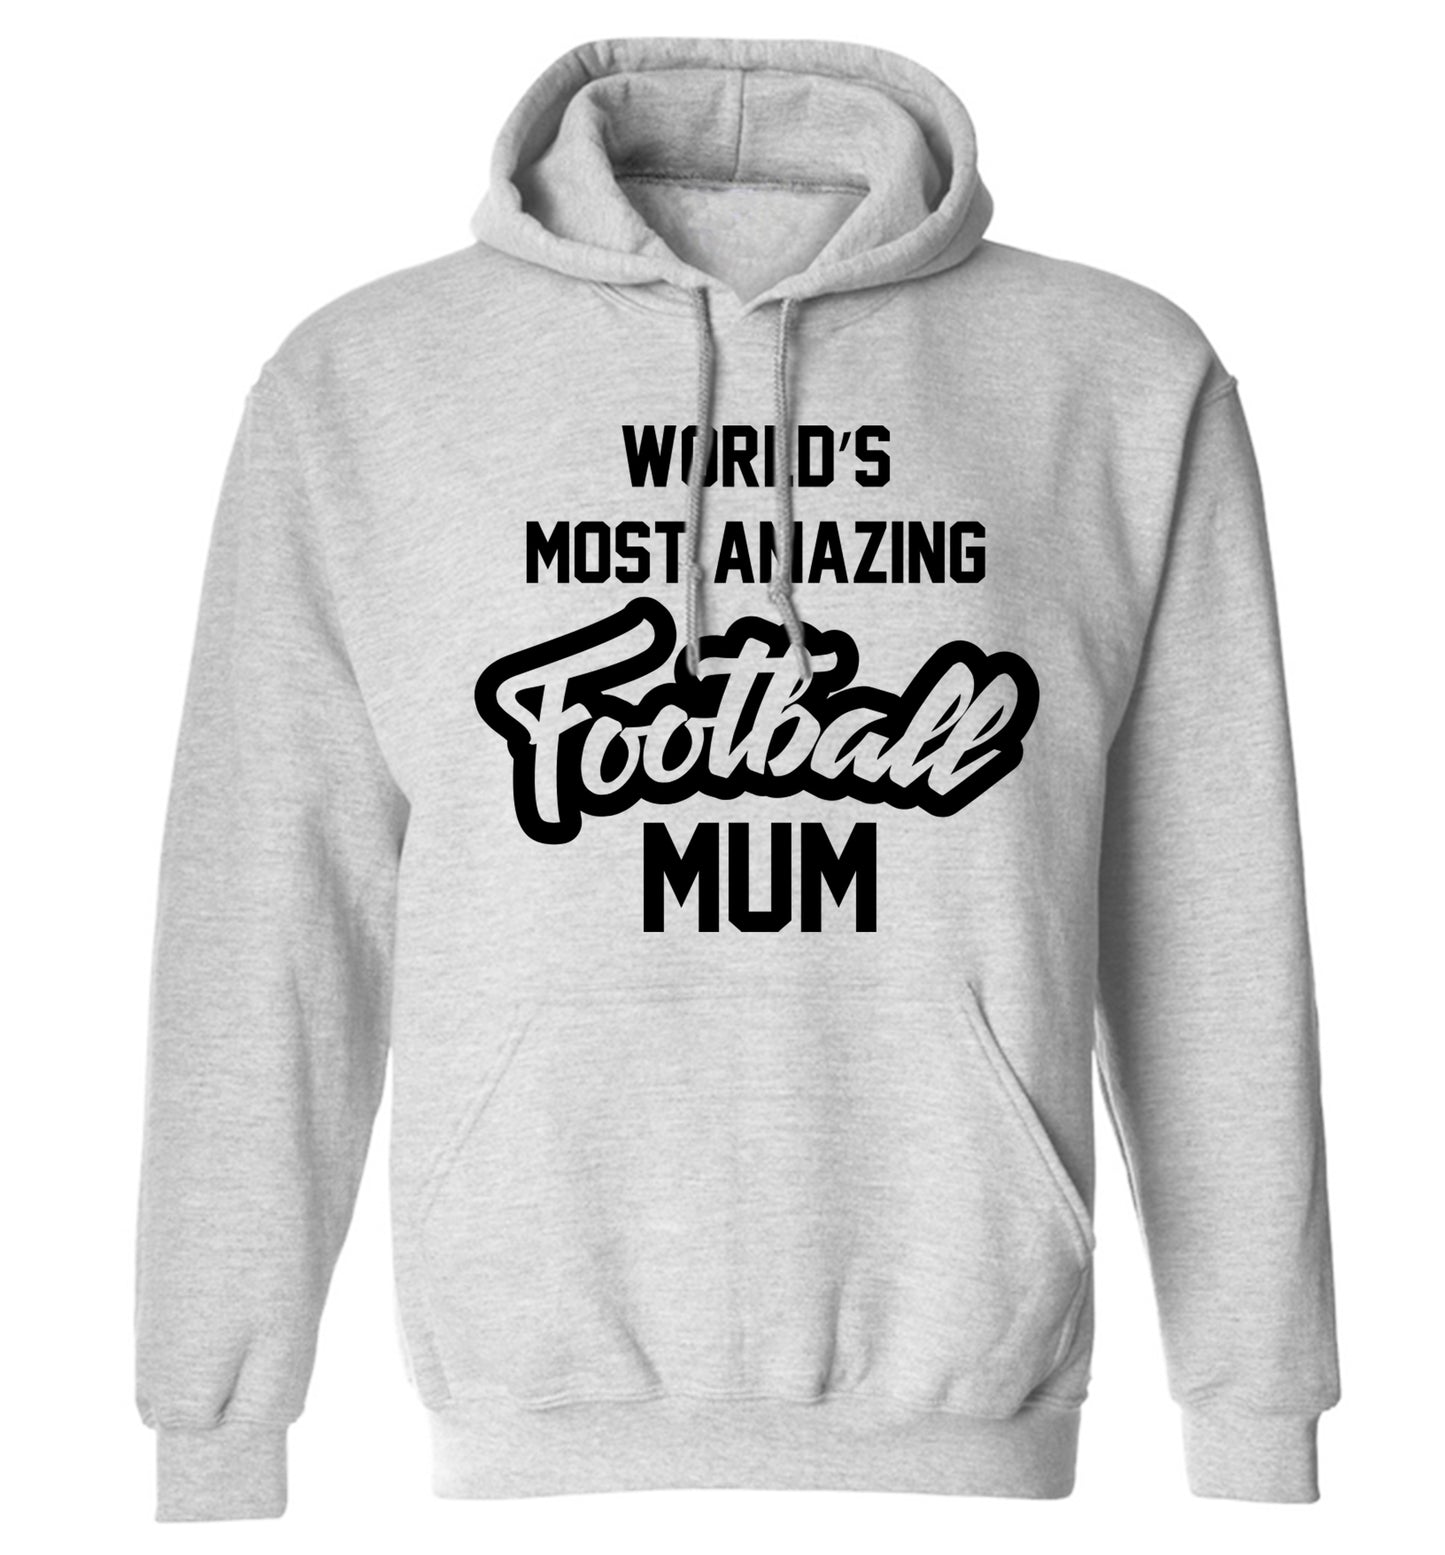 Worlds most amazing football mum adults unisexgrey hoodie 2XL